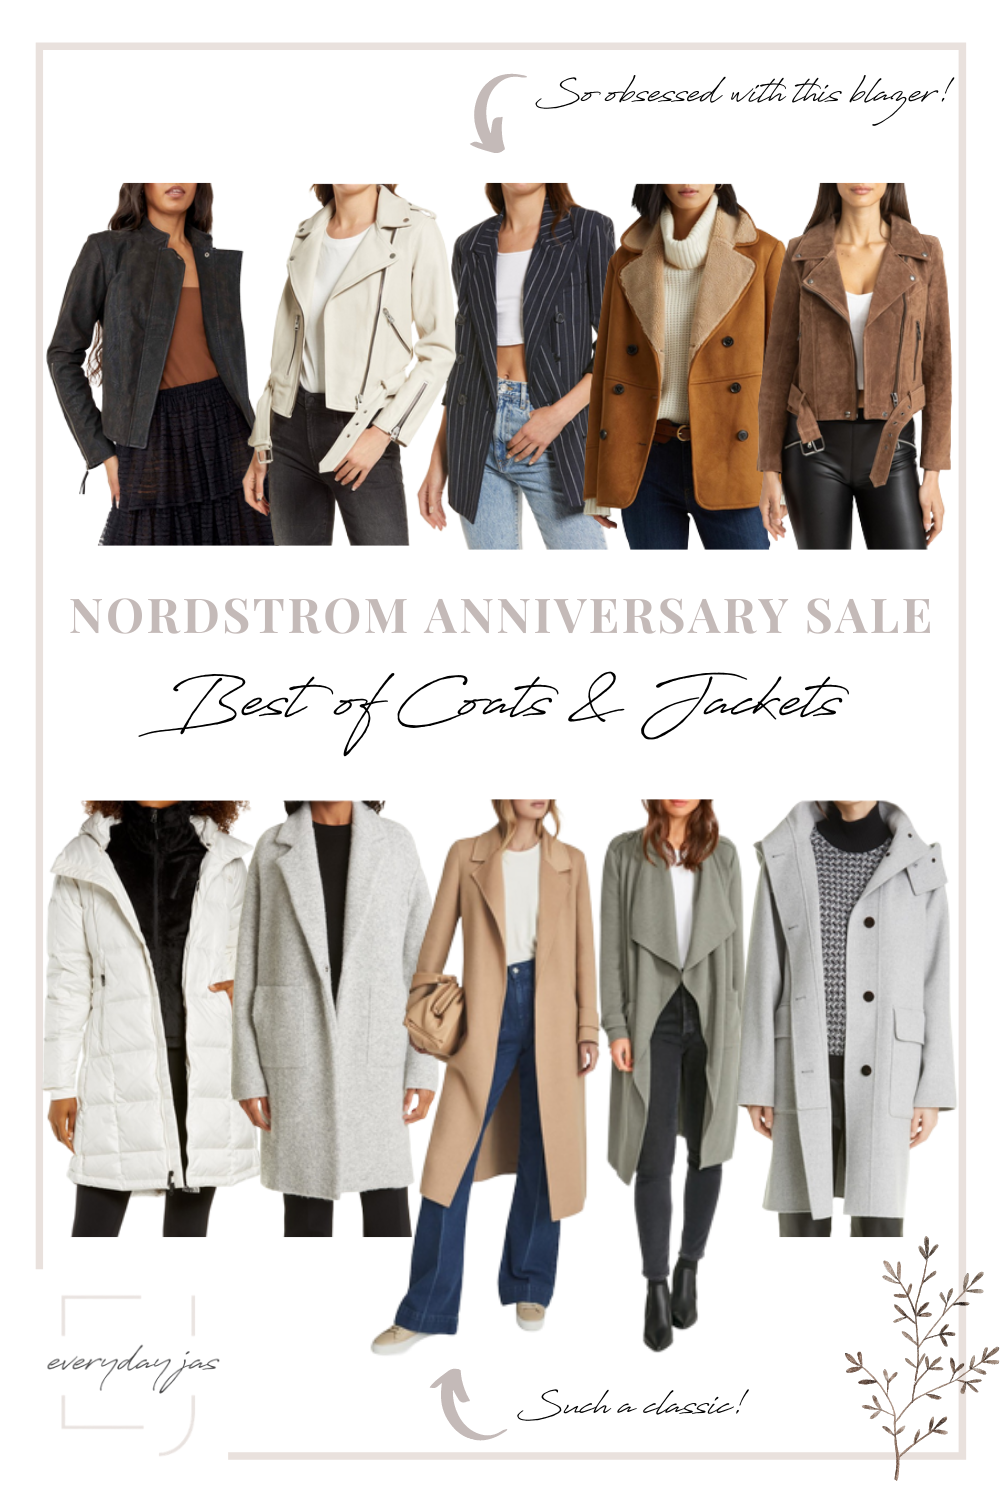 Women's Nordstrom Anniversary Sale best of coats & jackets